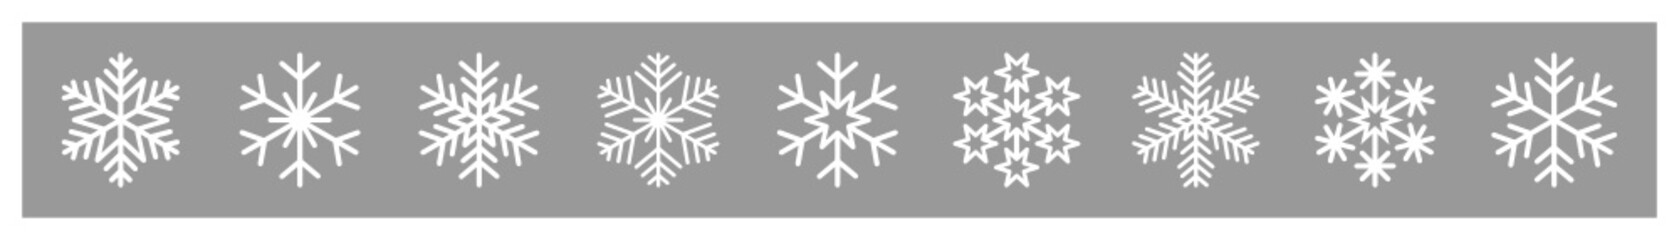 płatki śniegu zestaw ikon